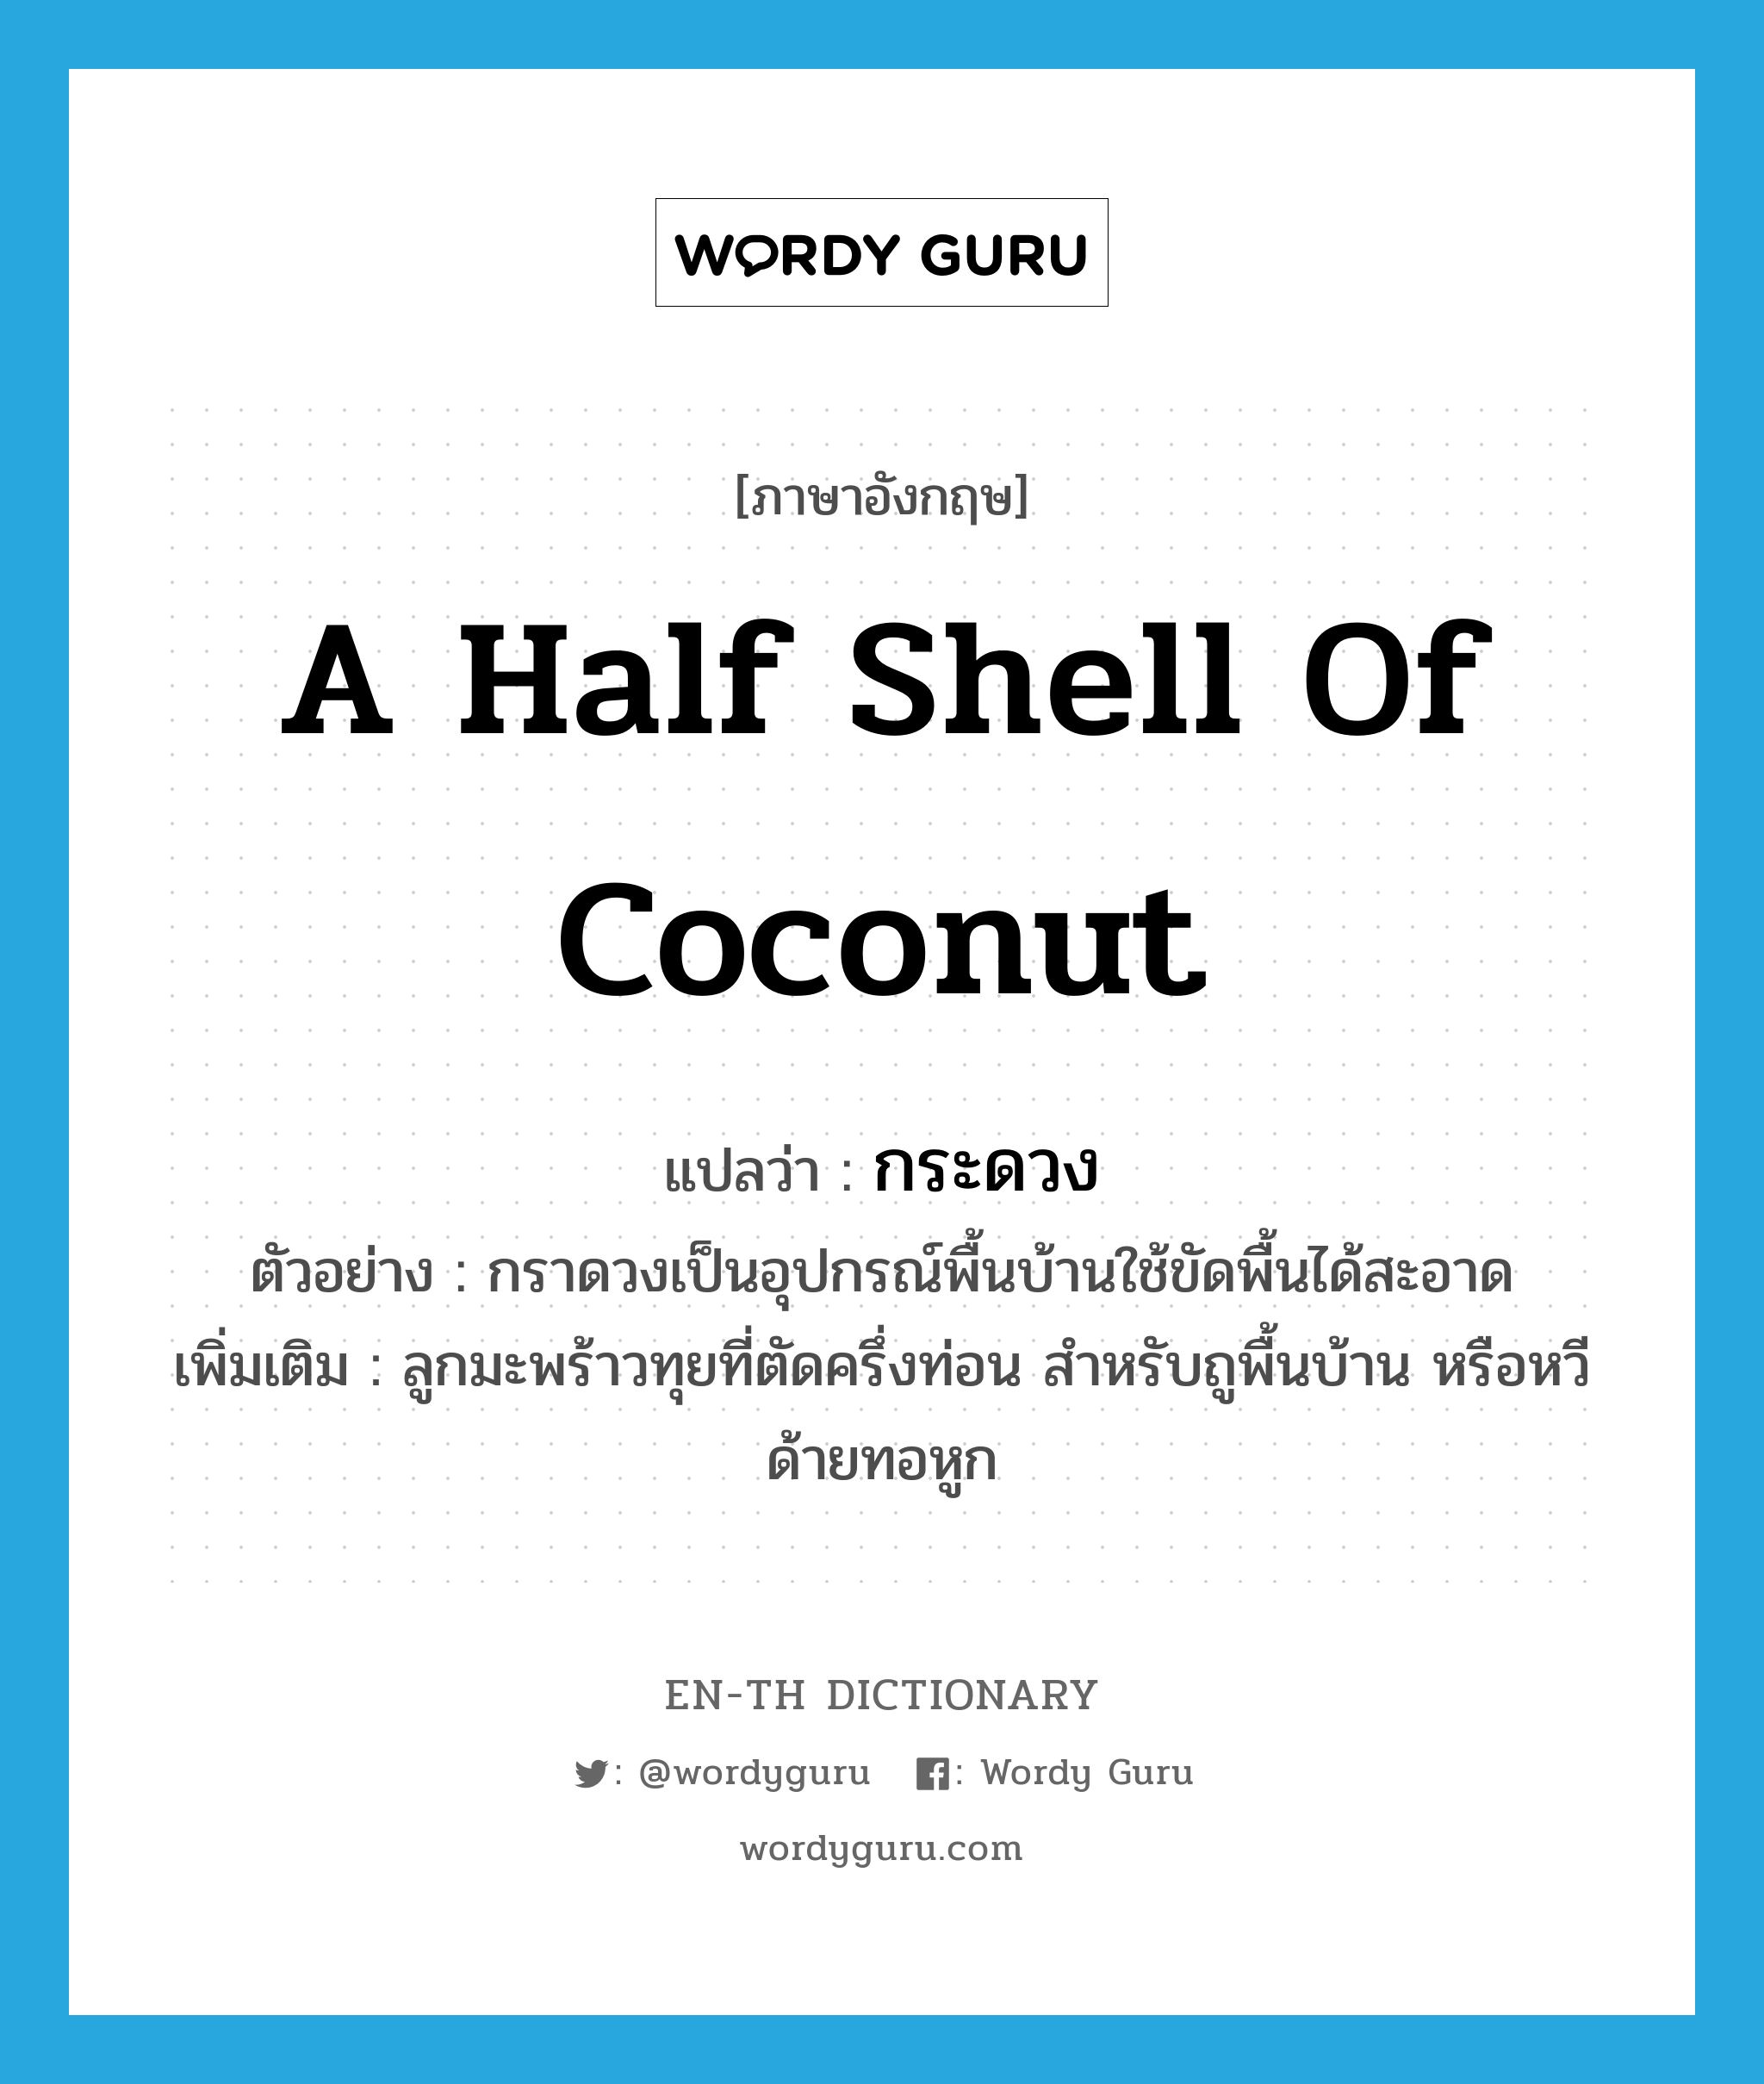 a half shell of coconut แปลว่า? คำศัพท์ในกลุ่มประเภท N, คำศัพท์ภาษาอังกฤษ a half shell of coconut แปลว่า กระดวง ประเภท N ตัวอย่าง กราดวงเป็นอุปกรณ์พื้นบ้านใช้ขัดพื้นได้สะอาด เพิ่มเติม ลูกมะพร้าวทุยที่ตัดครึ่งท่อน สำหรับถูพื้นบ้าน หรือหวีด้ายทอหูก หมวด N